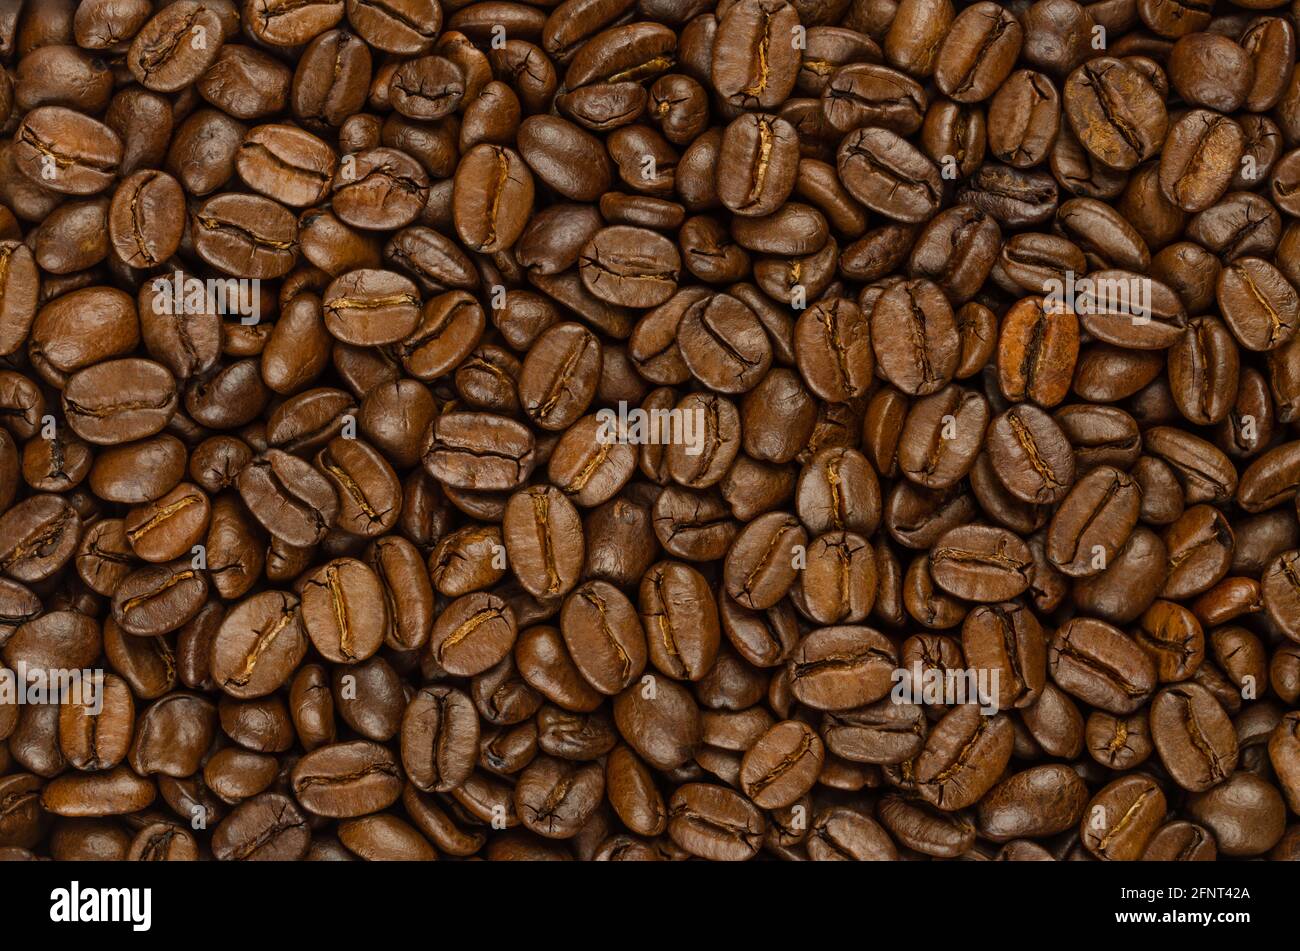 Granos de café asados, de fondo, desde arriba. Café oscuro, semillas asadas de bayas de Coffea arabica, también conocido como café árabe o arabica. Foto de stock